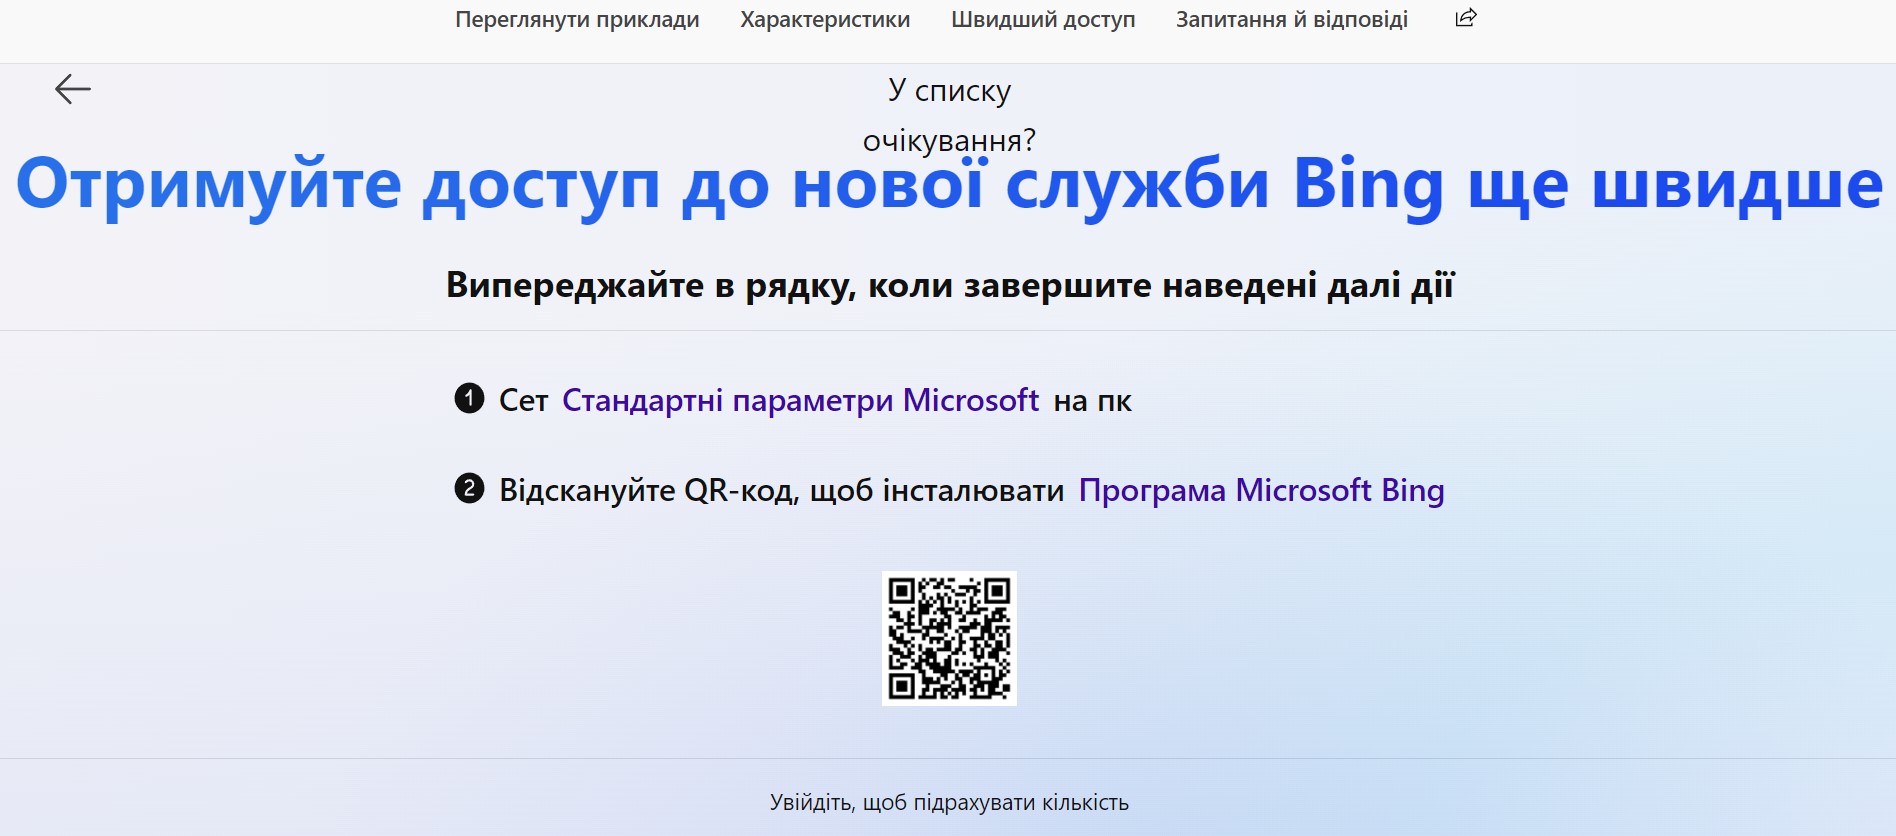 Bing — оновлений пошуковик Microsoft на базі ChatGPT — запрацював з 7 лютого. Як ним скористатися?